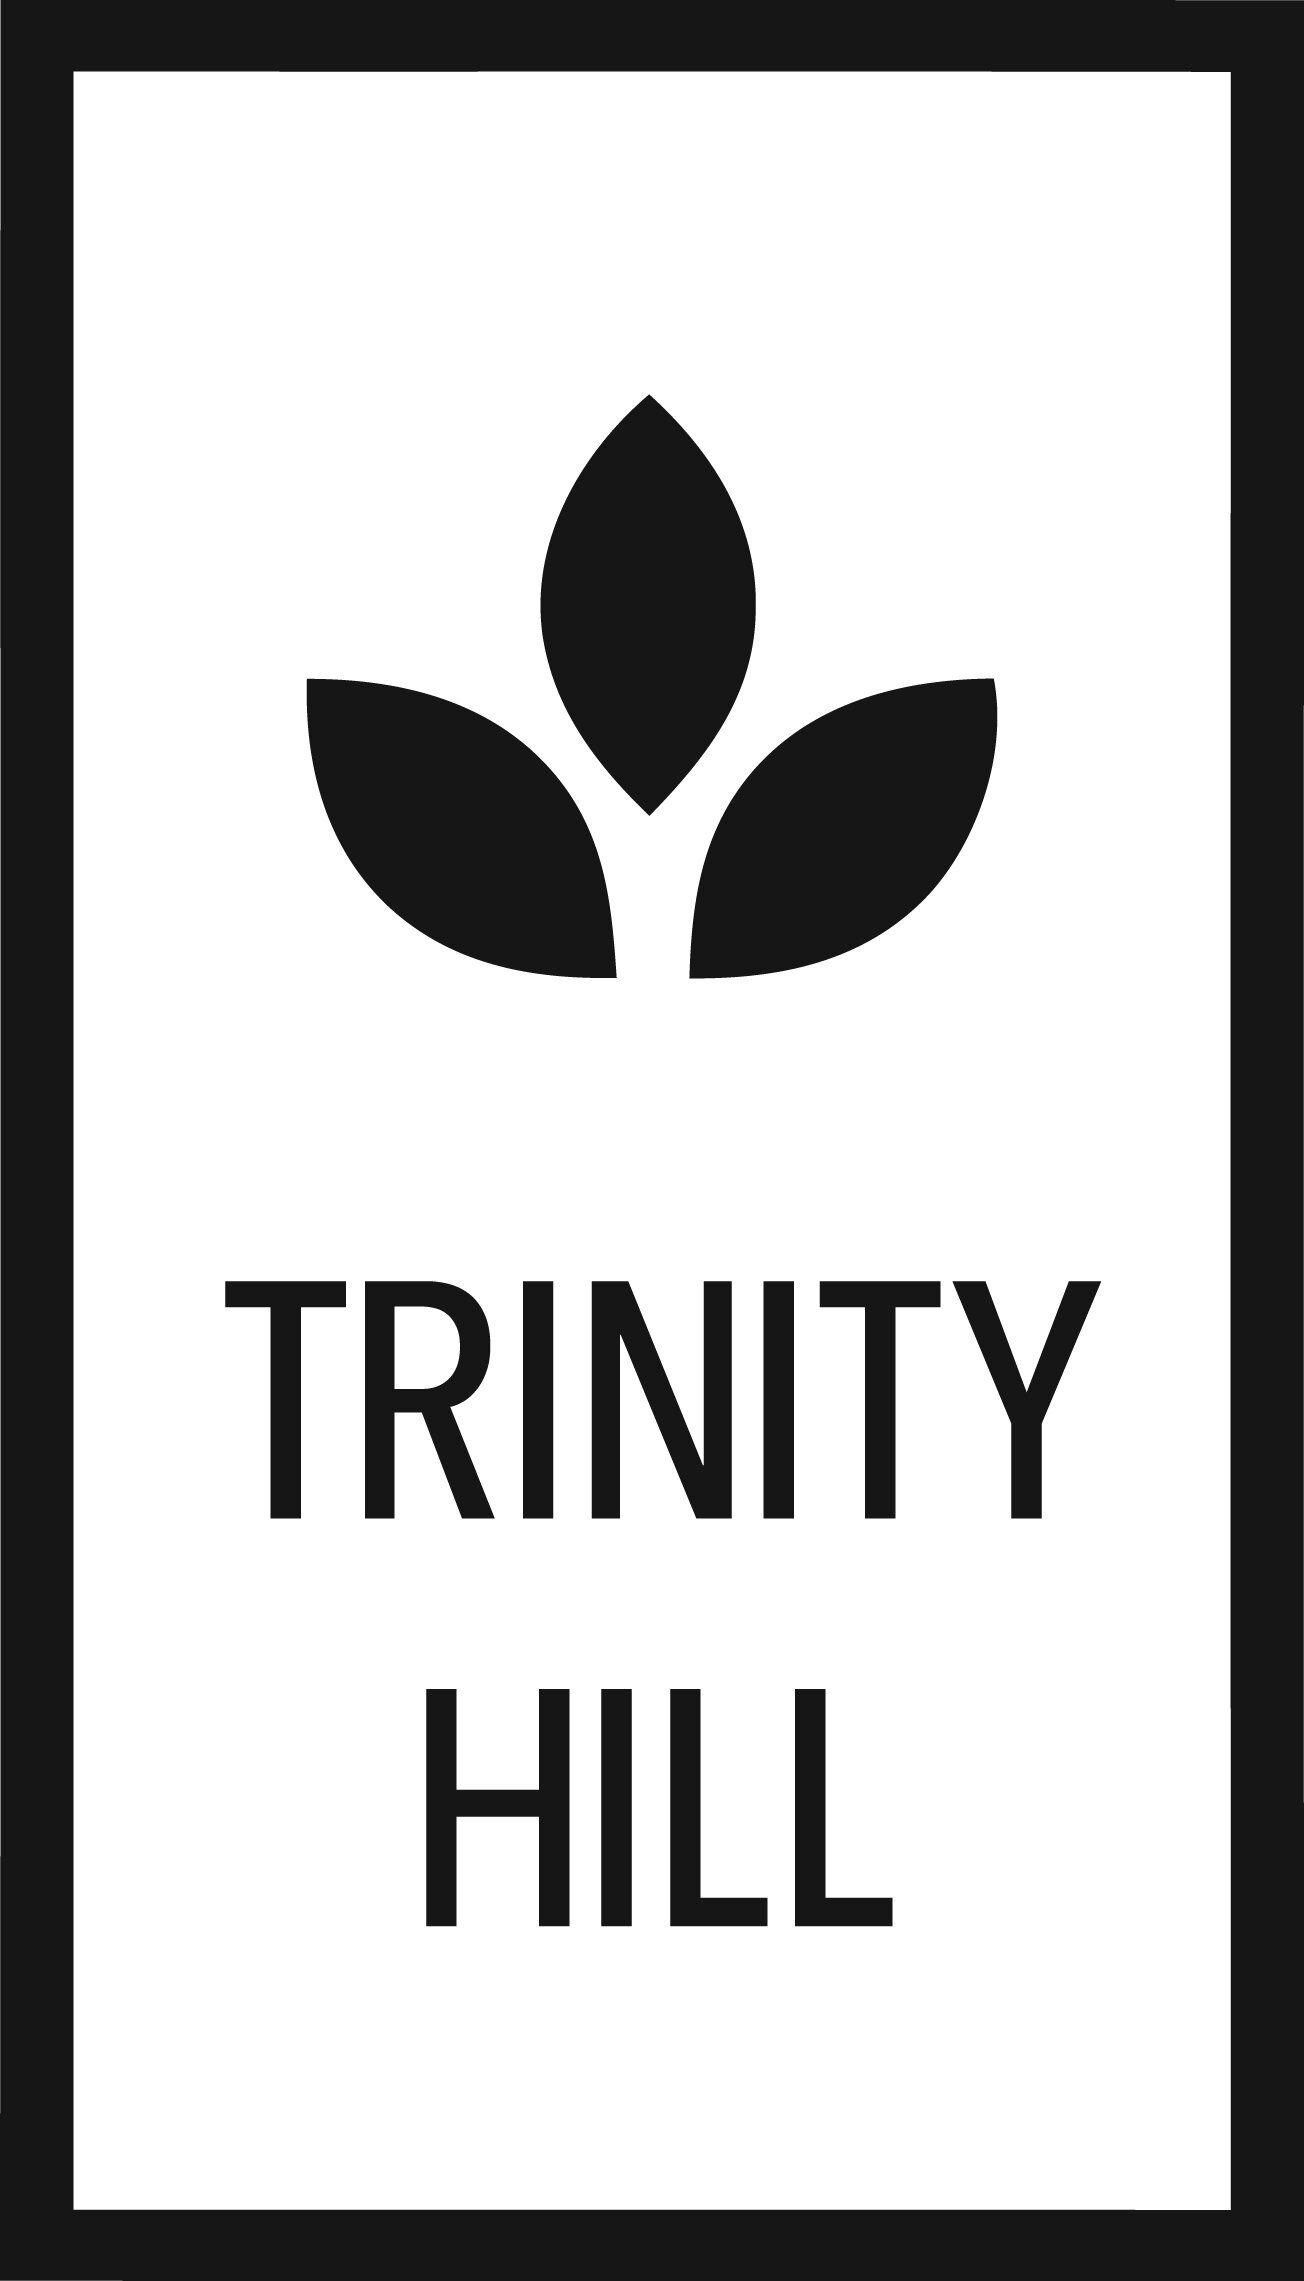 Trinity Hill Church